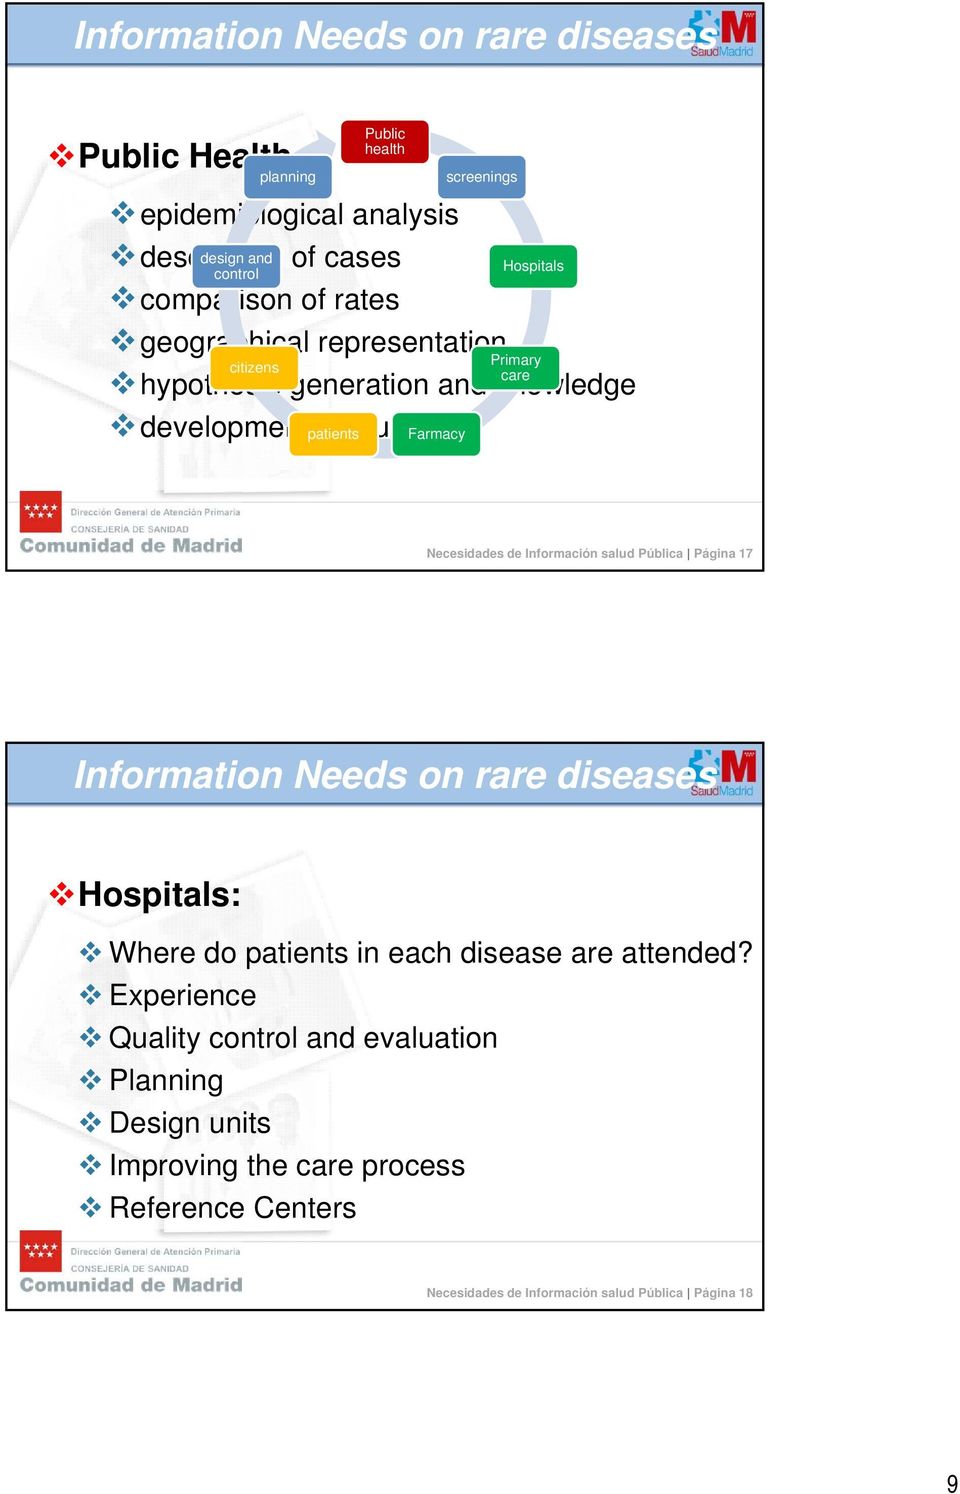 Primary Necesidades de Información salud Pública Página 17 Information Needs on rare diseases Hospitals: Where do patients in each disease are attended?